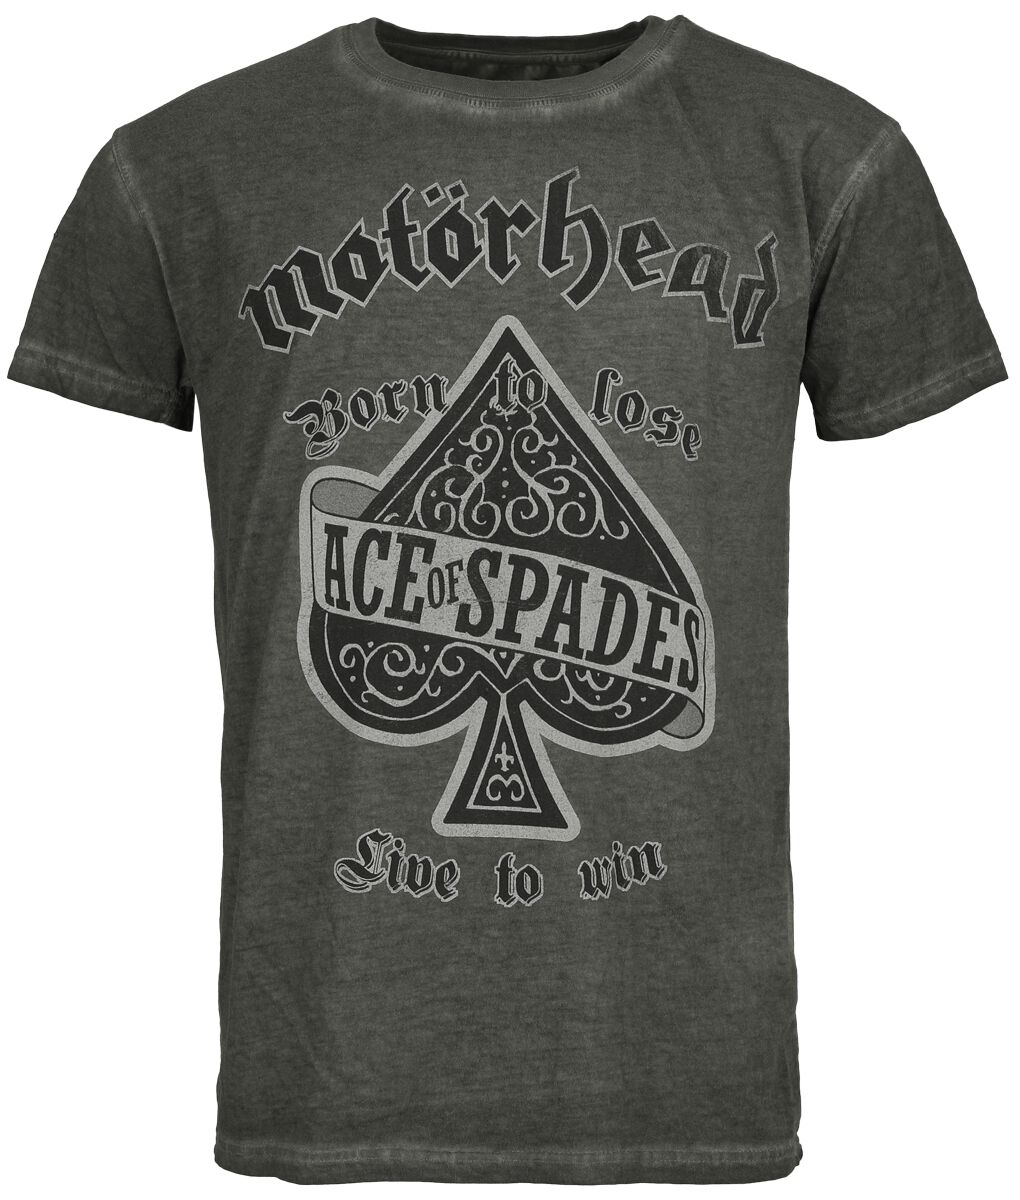 Motörhead T-Shirt - Ace Of Spades - S bis 4XL - für Männer - Größe 4XL - anthrazit  - Lizenziertes Merchandise!